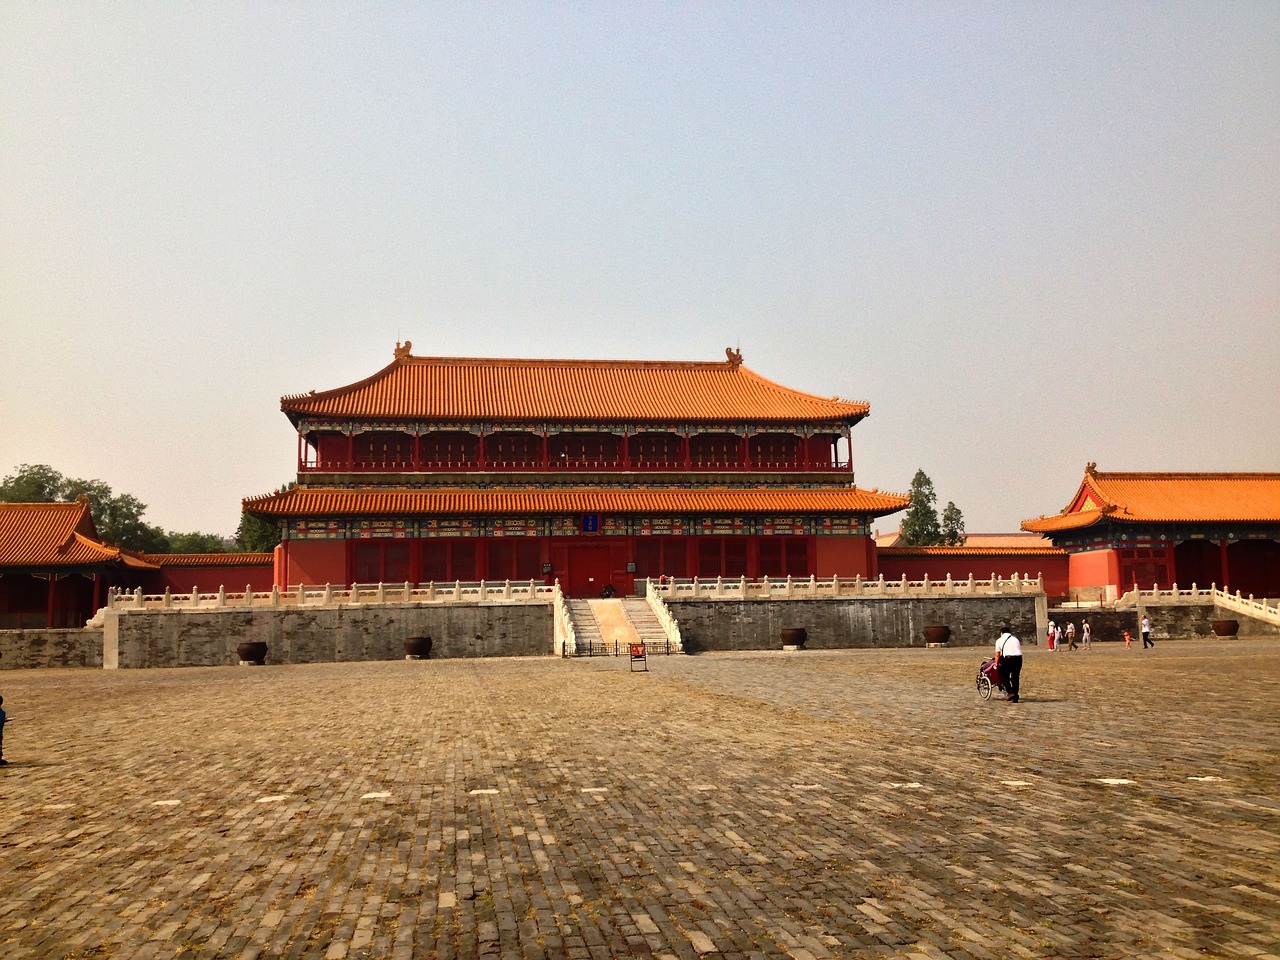 Beijing's Historical Wonders